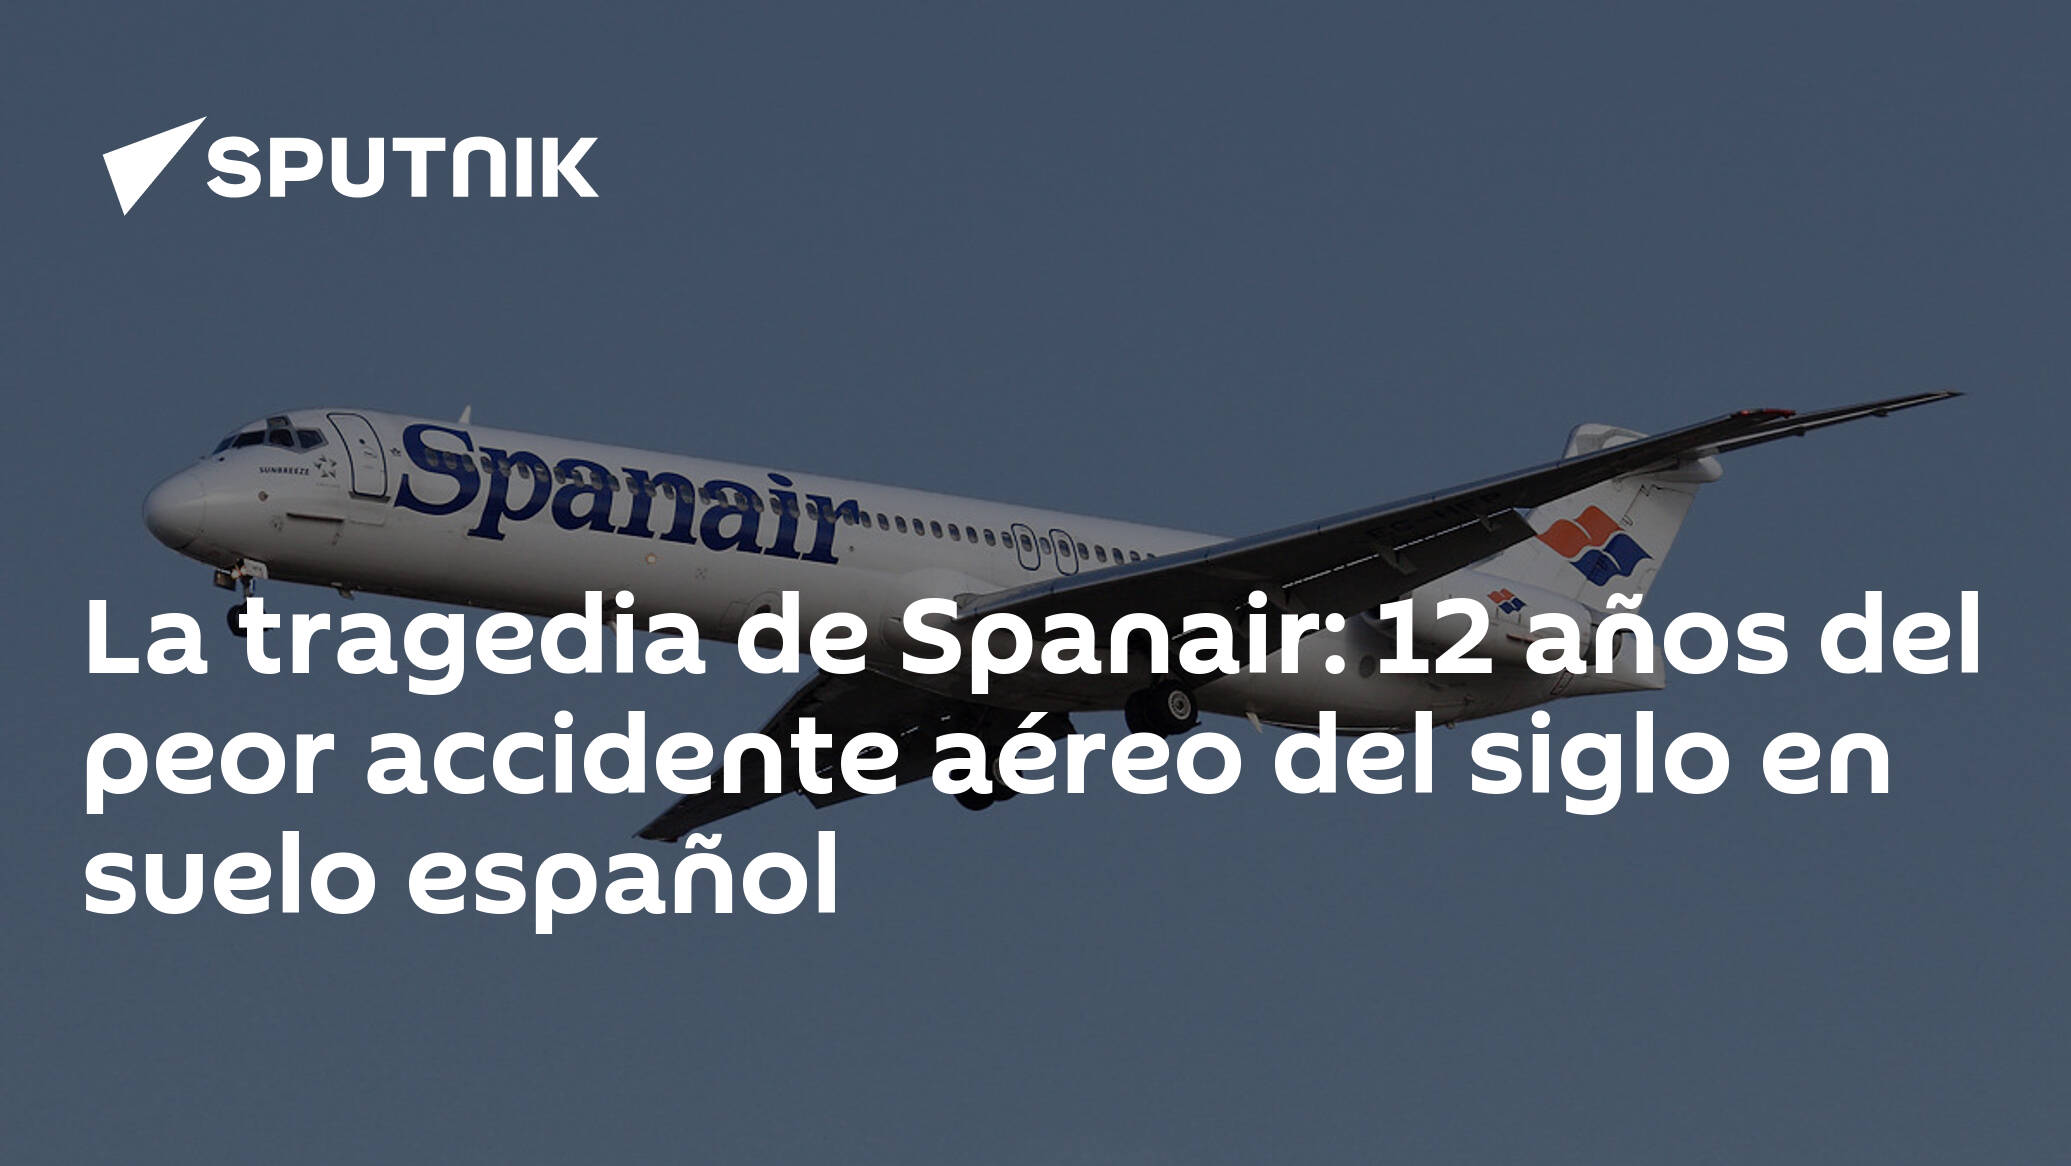 Pebish Seis Barra oblicua La tragedia de Spanair: 12 años del peor accidente aéreo del siglo en suelo  español - 20.08.2020, Sputnik Mundo